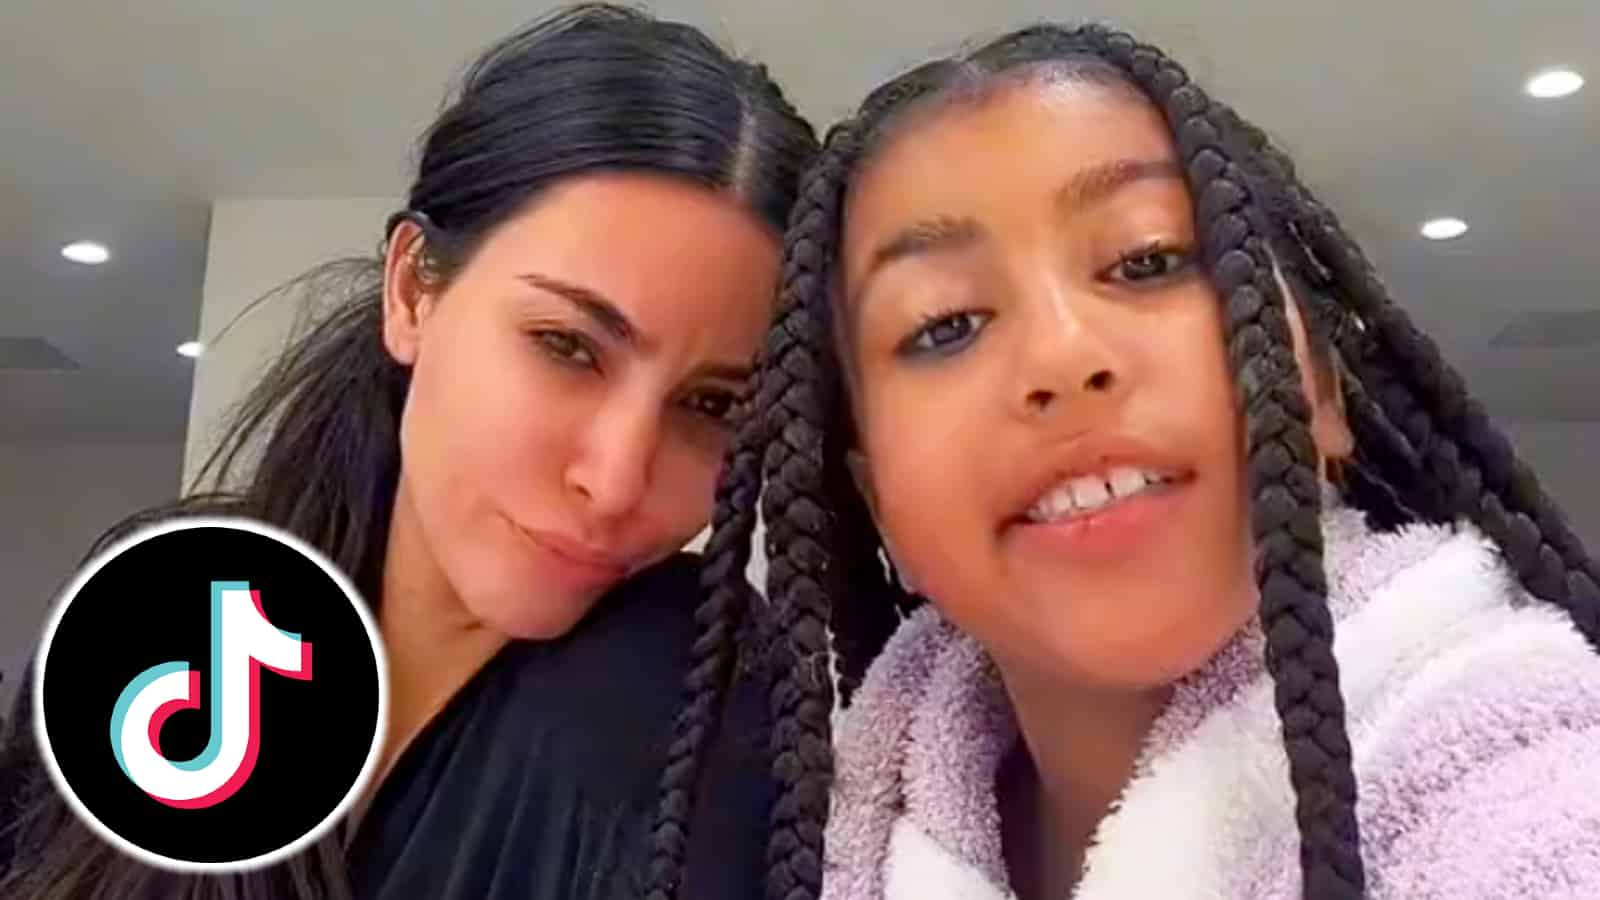 Kim Kardashian and North take over TikTok with viral 'Emo Girl